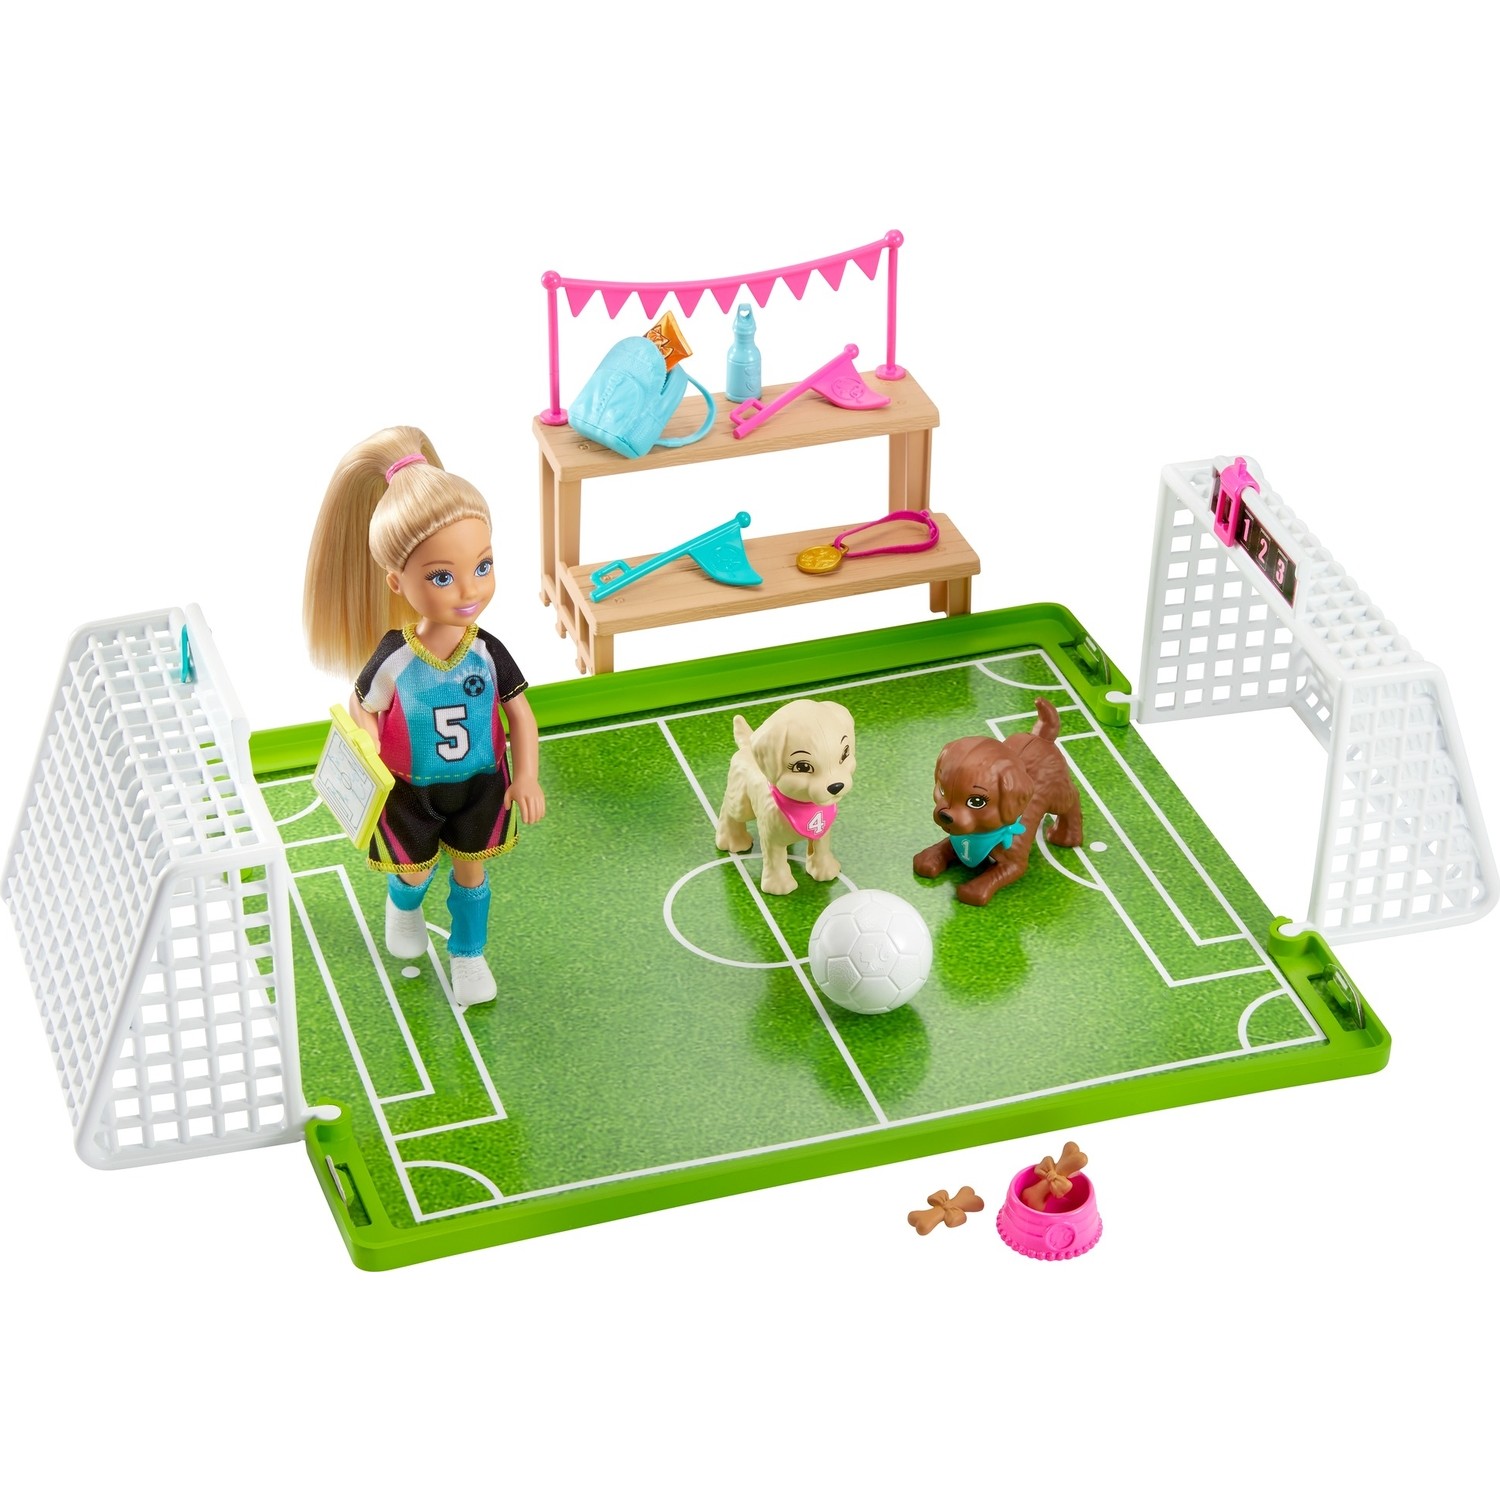 Игровой набор Barbie Челси играет в футбол GHK37 набор barbie клуб челси паровозик frl86